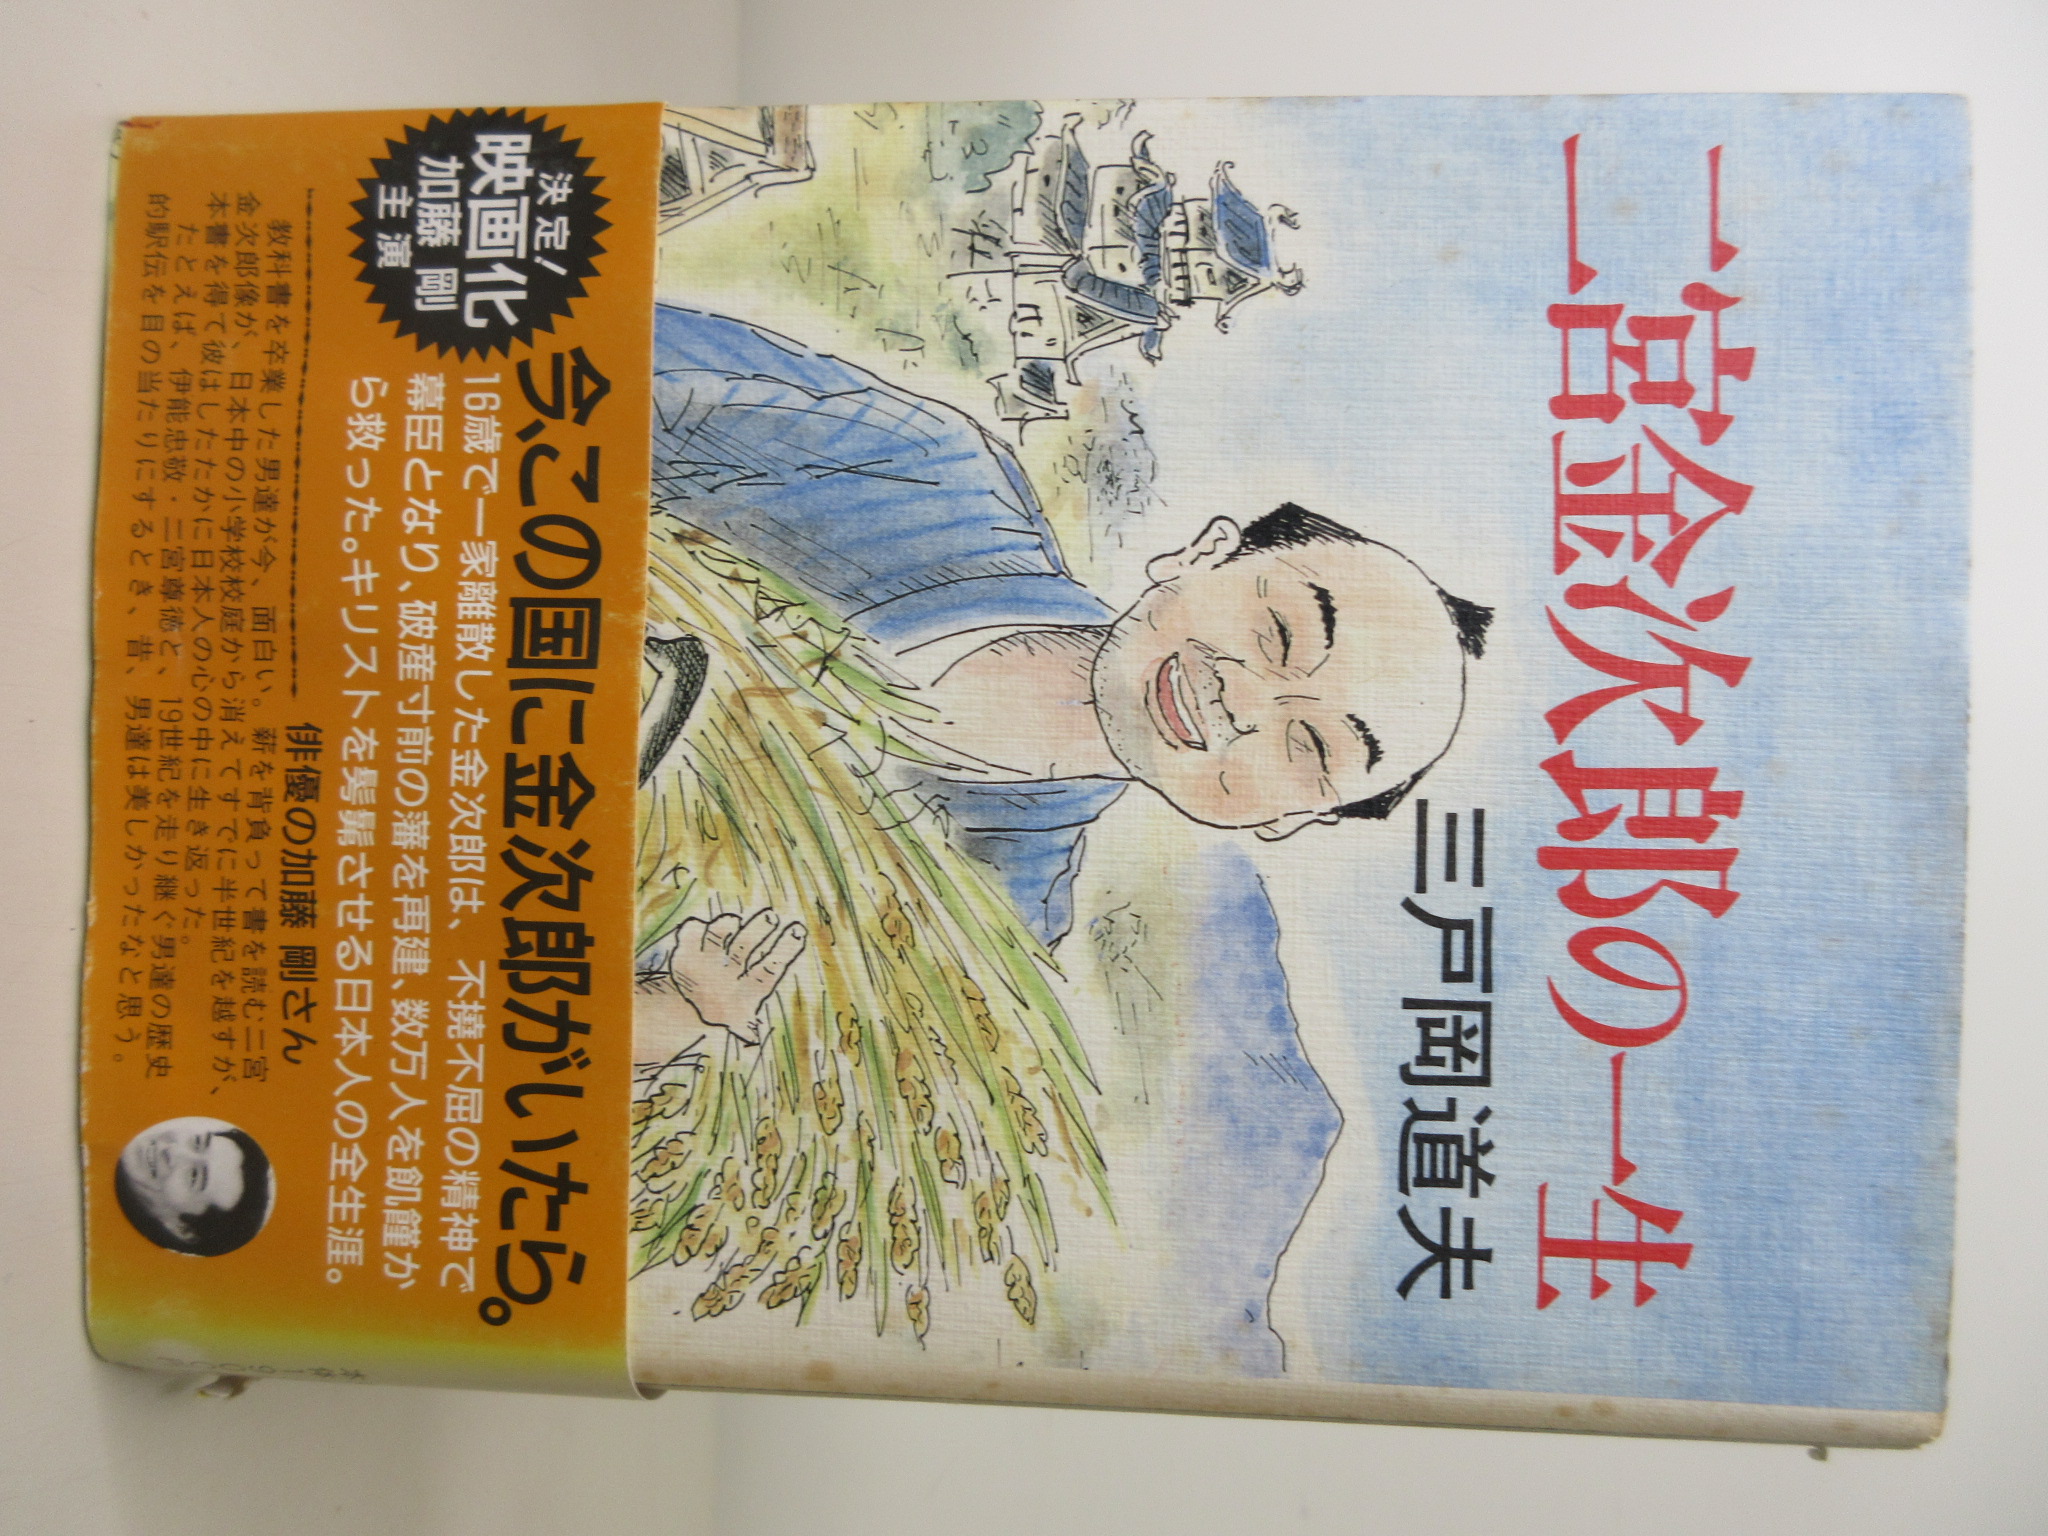 二宮金次郎の一生[三戸岡 道夫](栄光出版社)(ISBN:4061845055)